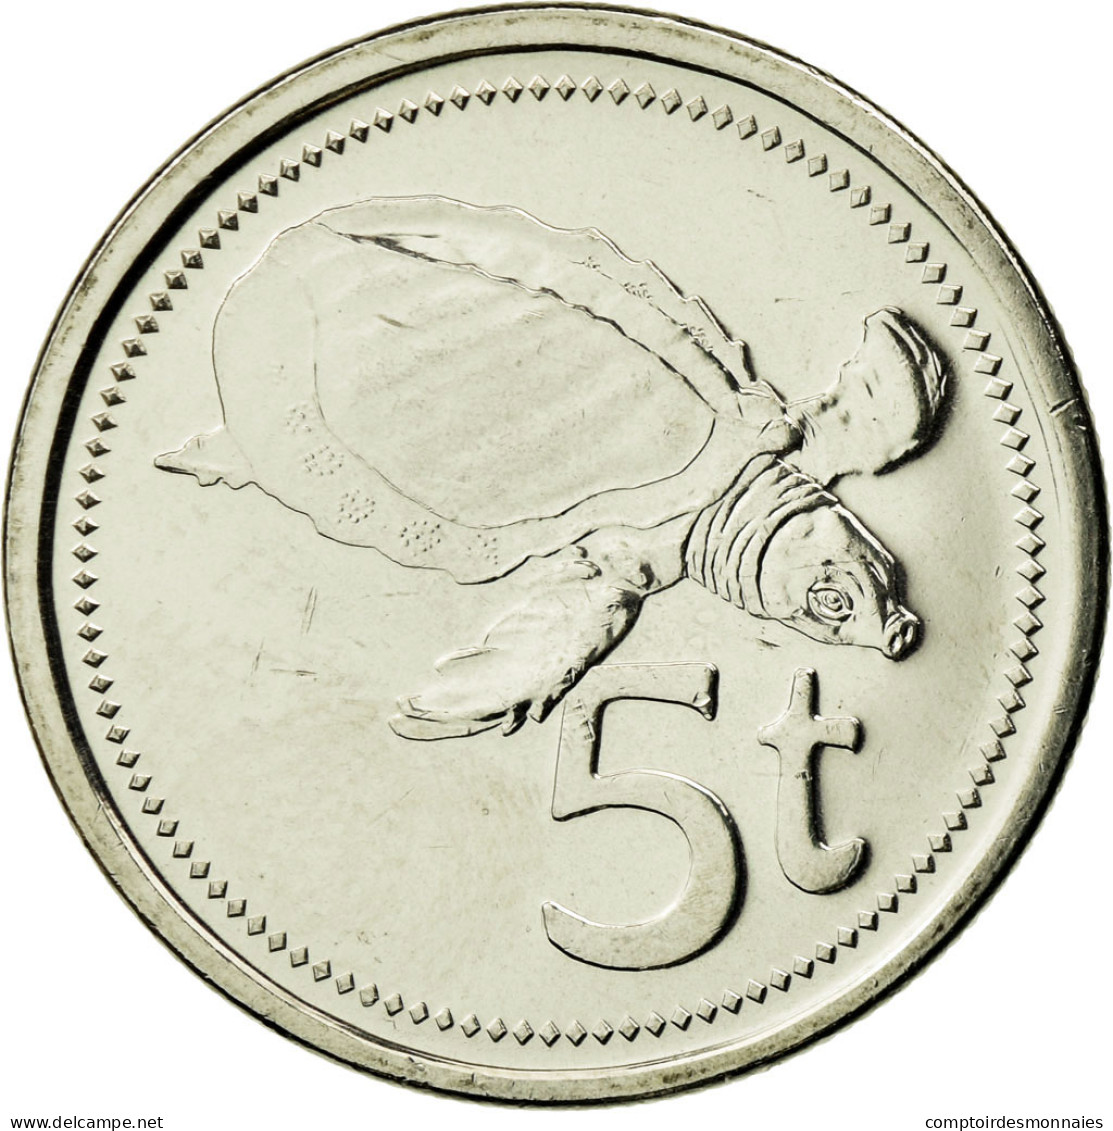 Monnaie, Papua New Guinea, 5 Toea, 2005, SPL, Nickel Plated Steel, KM:3a - Papúa Nueva Guinea